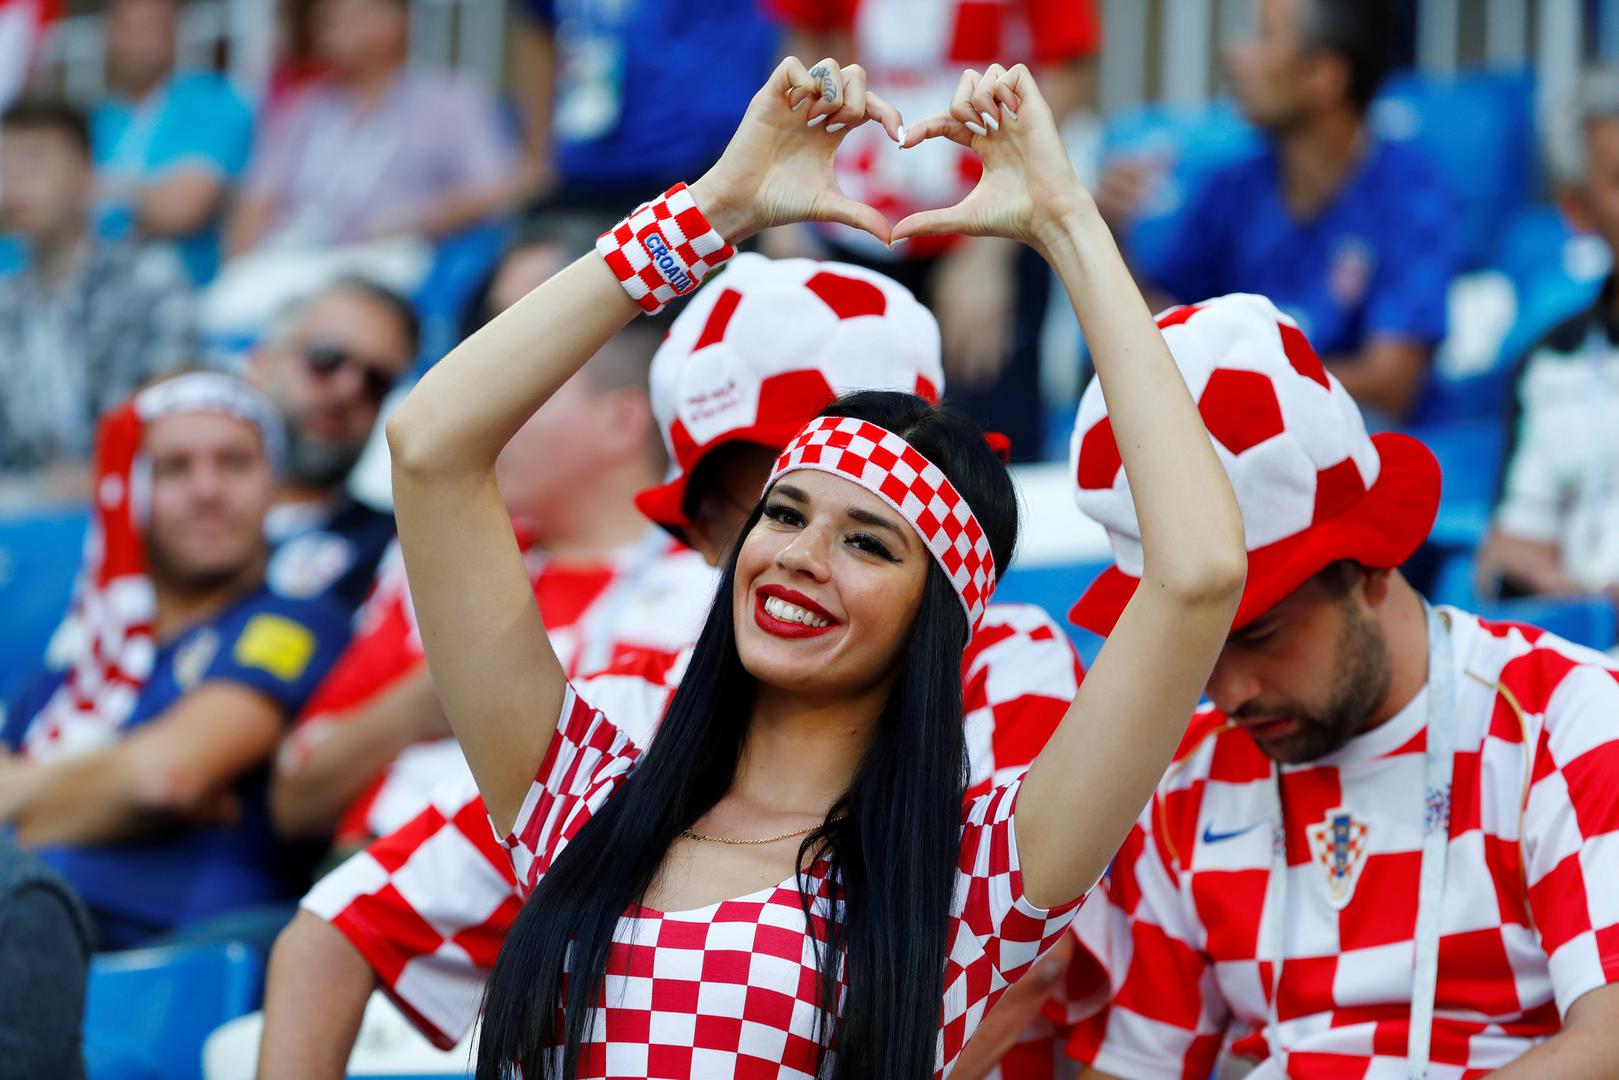 Hrvatski navijači su preko Fifine stranice mogli kupiti oko 2.000 ulaznica za 'kockasti' sektor, a HNS je imao još oko 700 ulaznica. No, hrvatskih navijača je bilo po svim tribinama